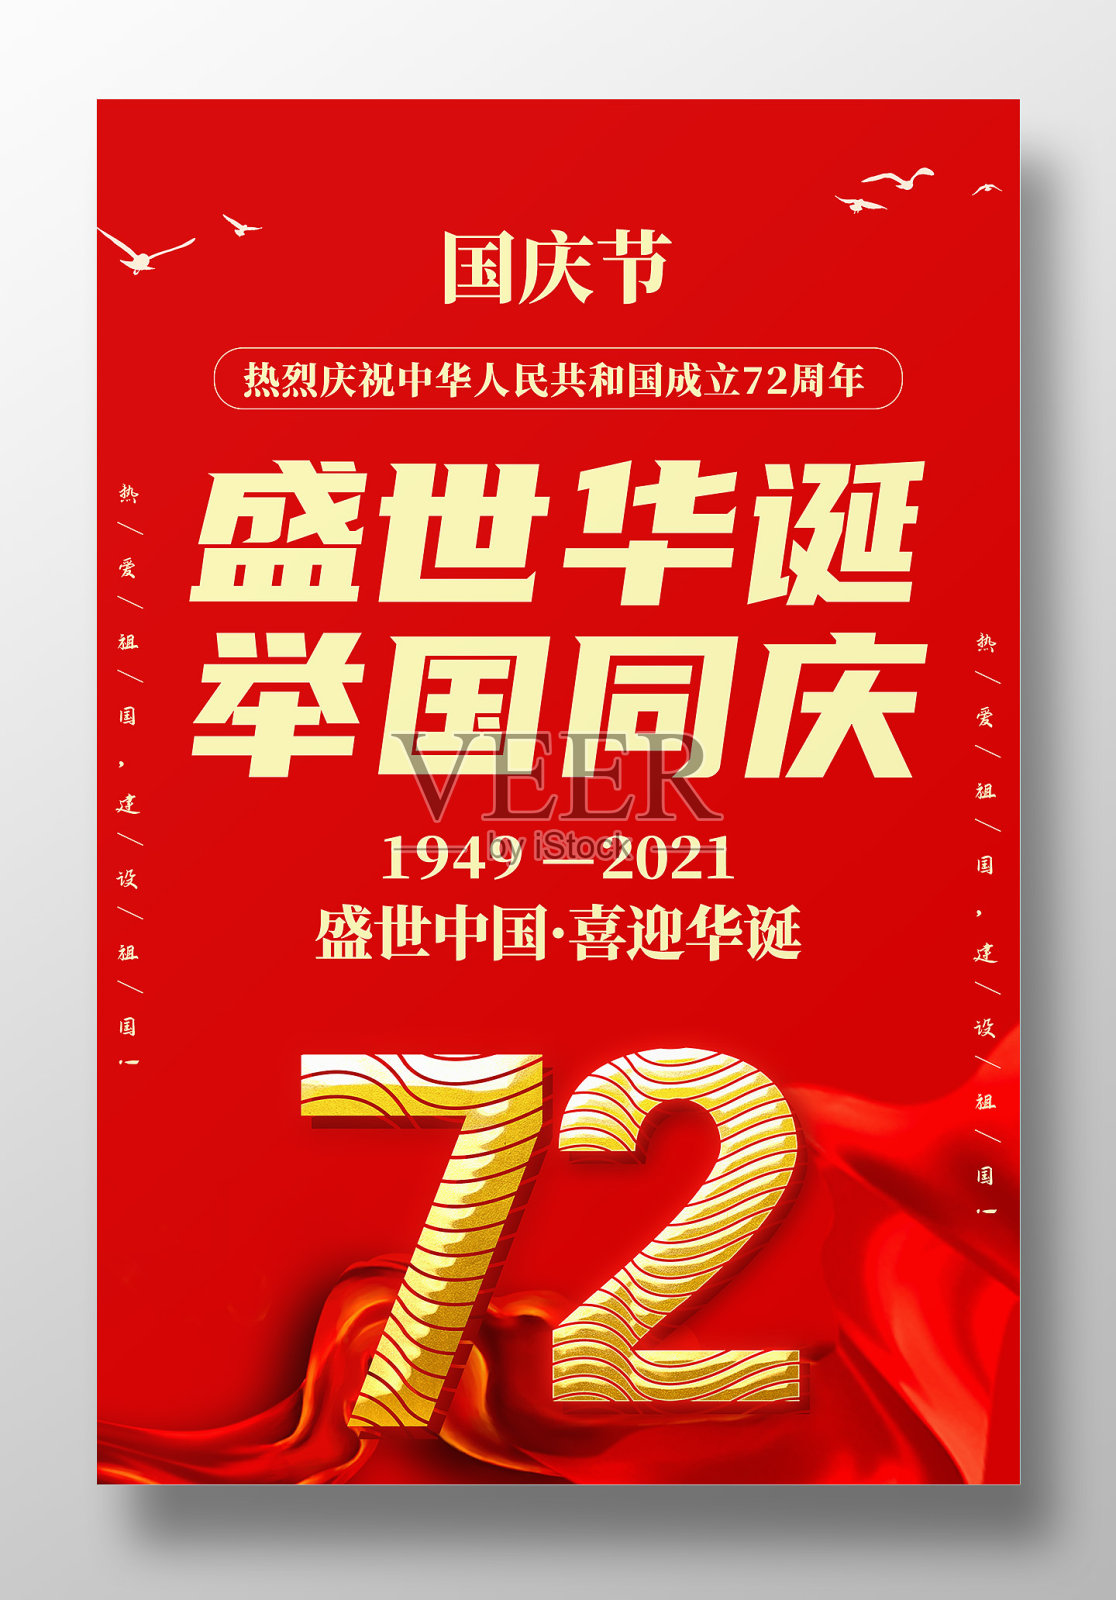 简约盛世华诞举国同庆国庆72周年海报设计设计模板素材